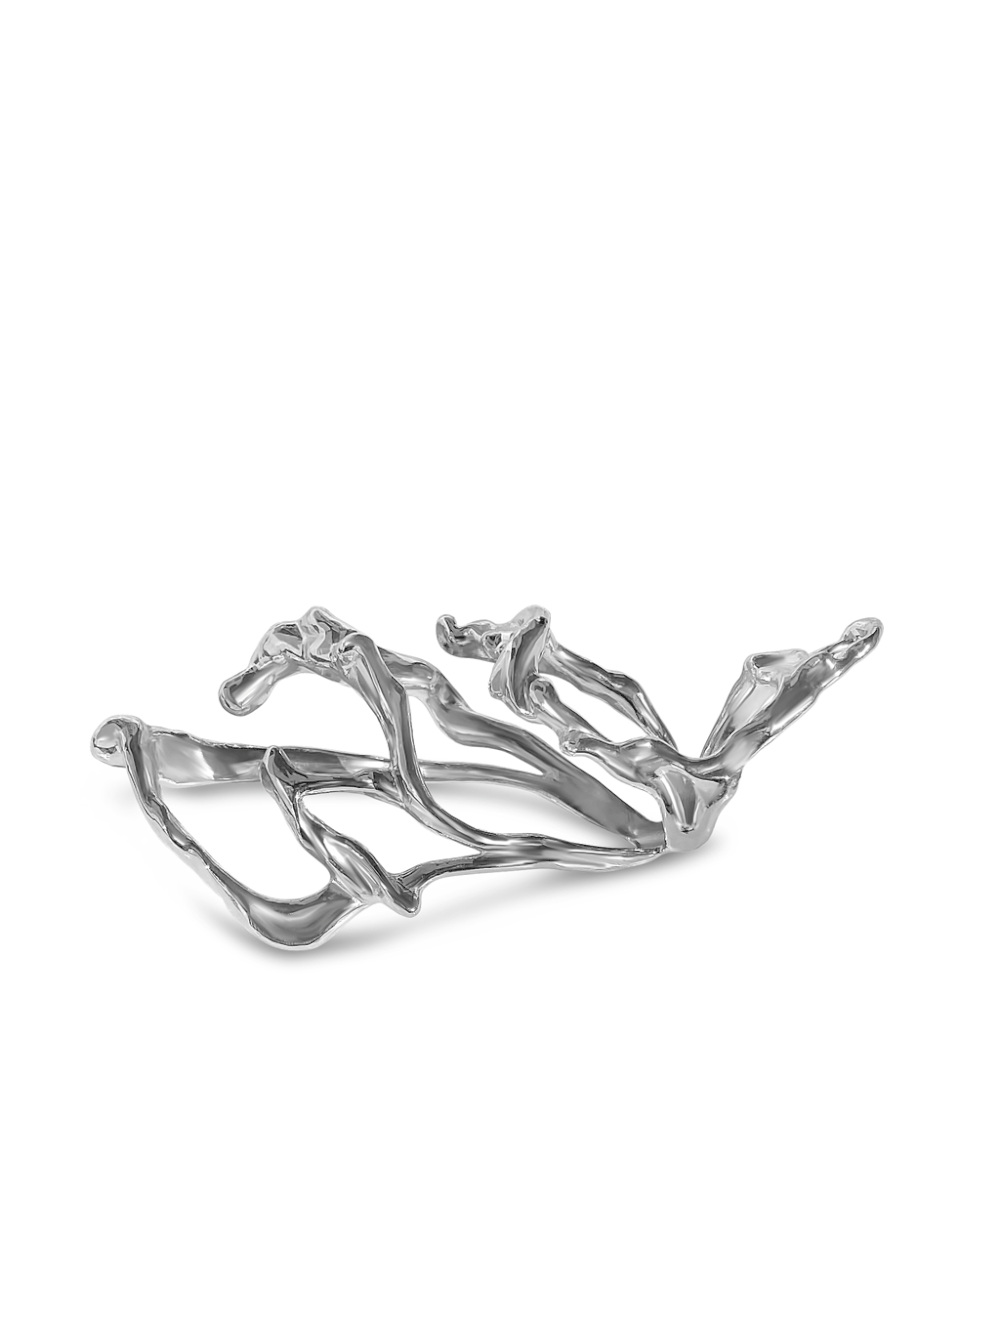 3D Printed Baroque Ring Jewelry Lada Legina